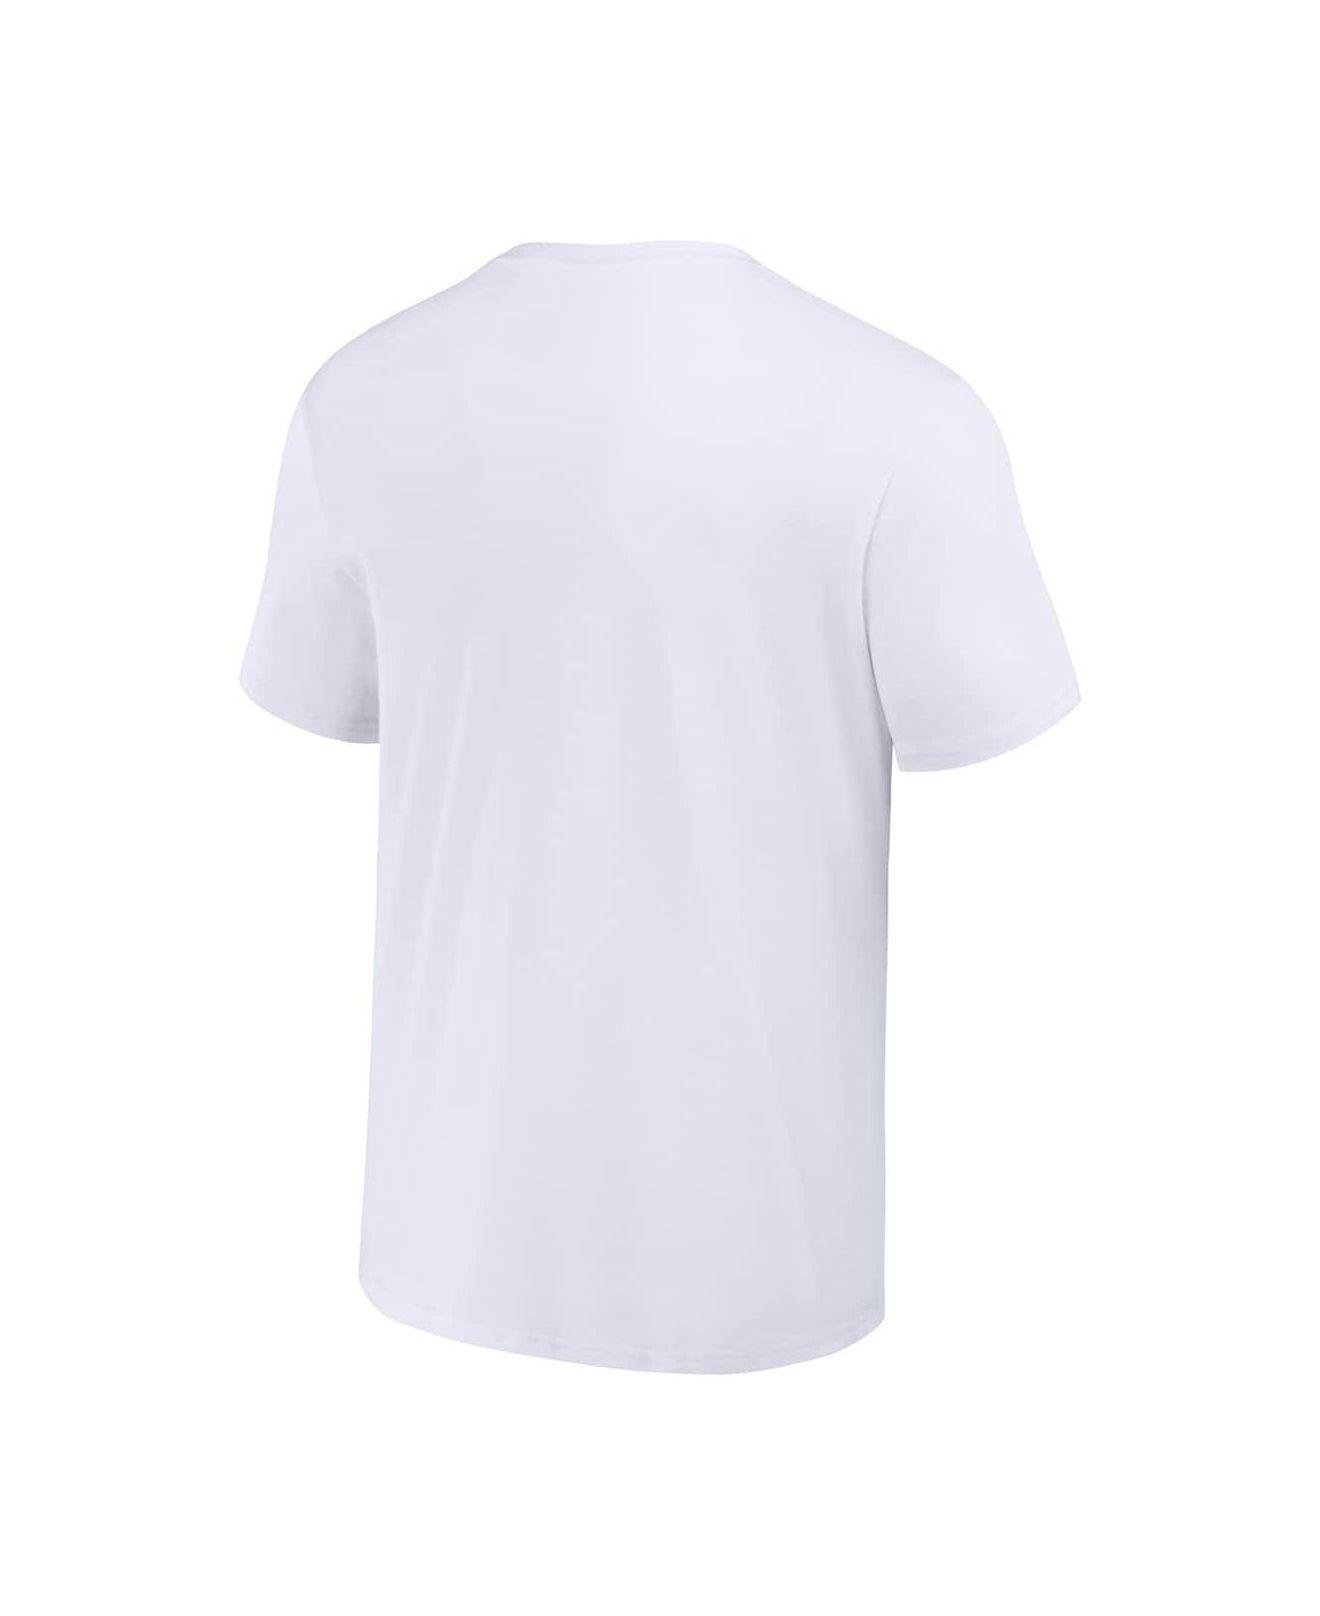 white nfl shirt